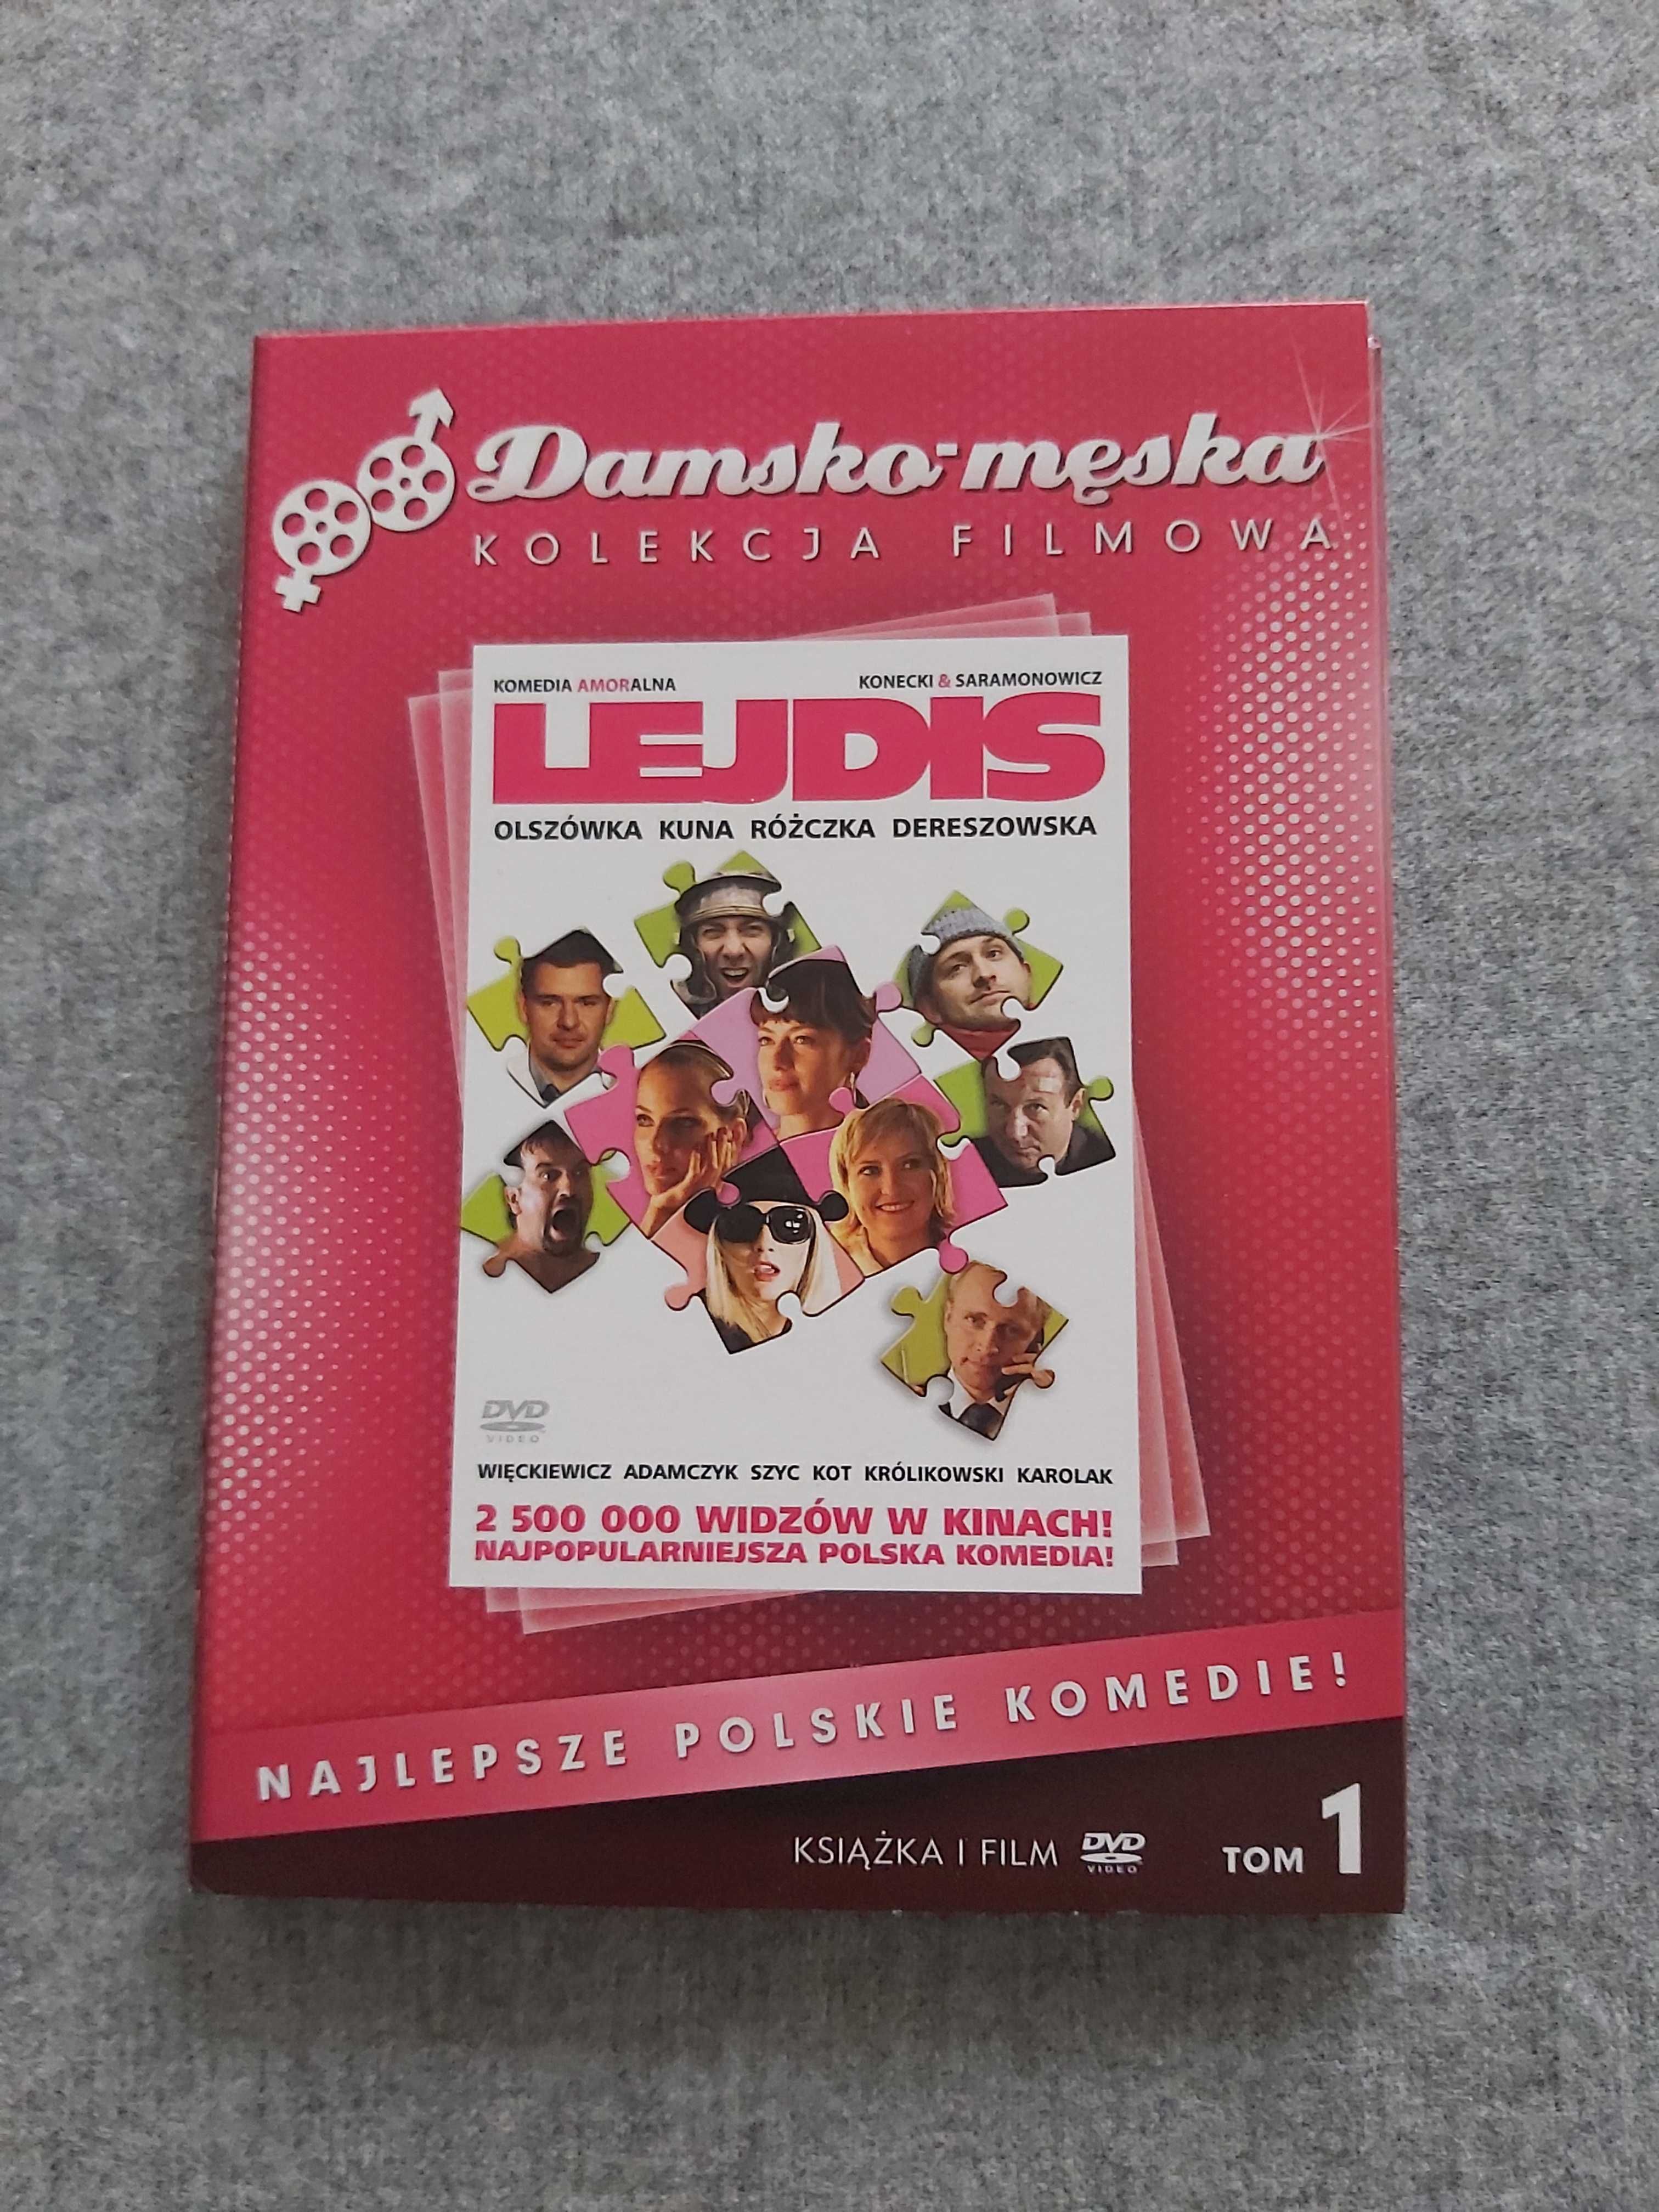 Lejdis książka i film DVD tom 1 Damsko-męska kolekcja filmowa